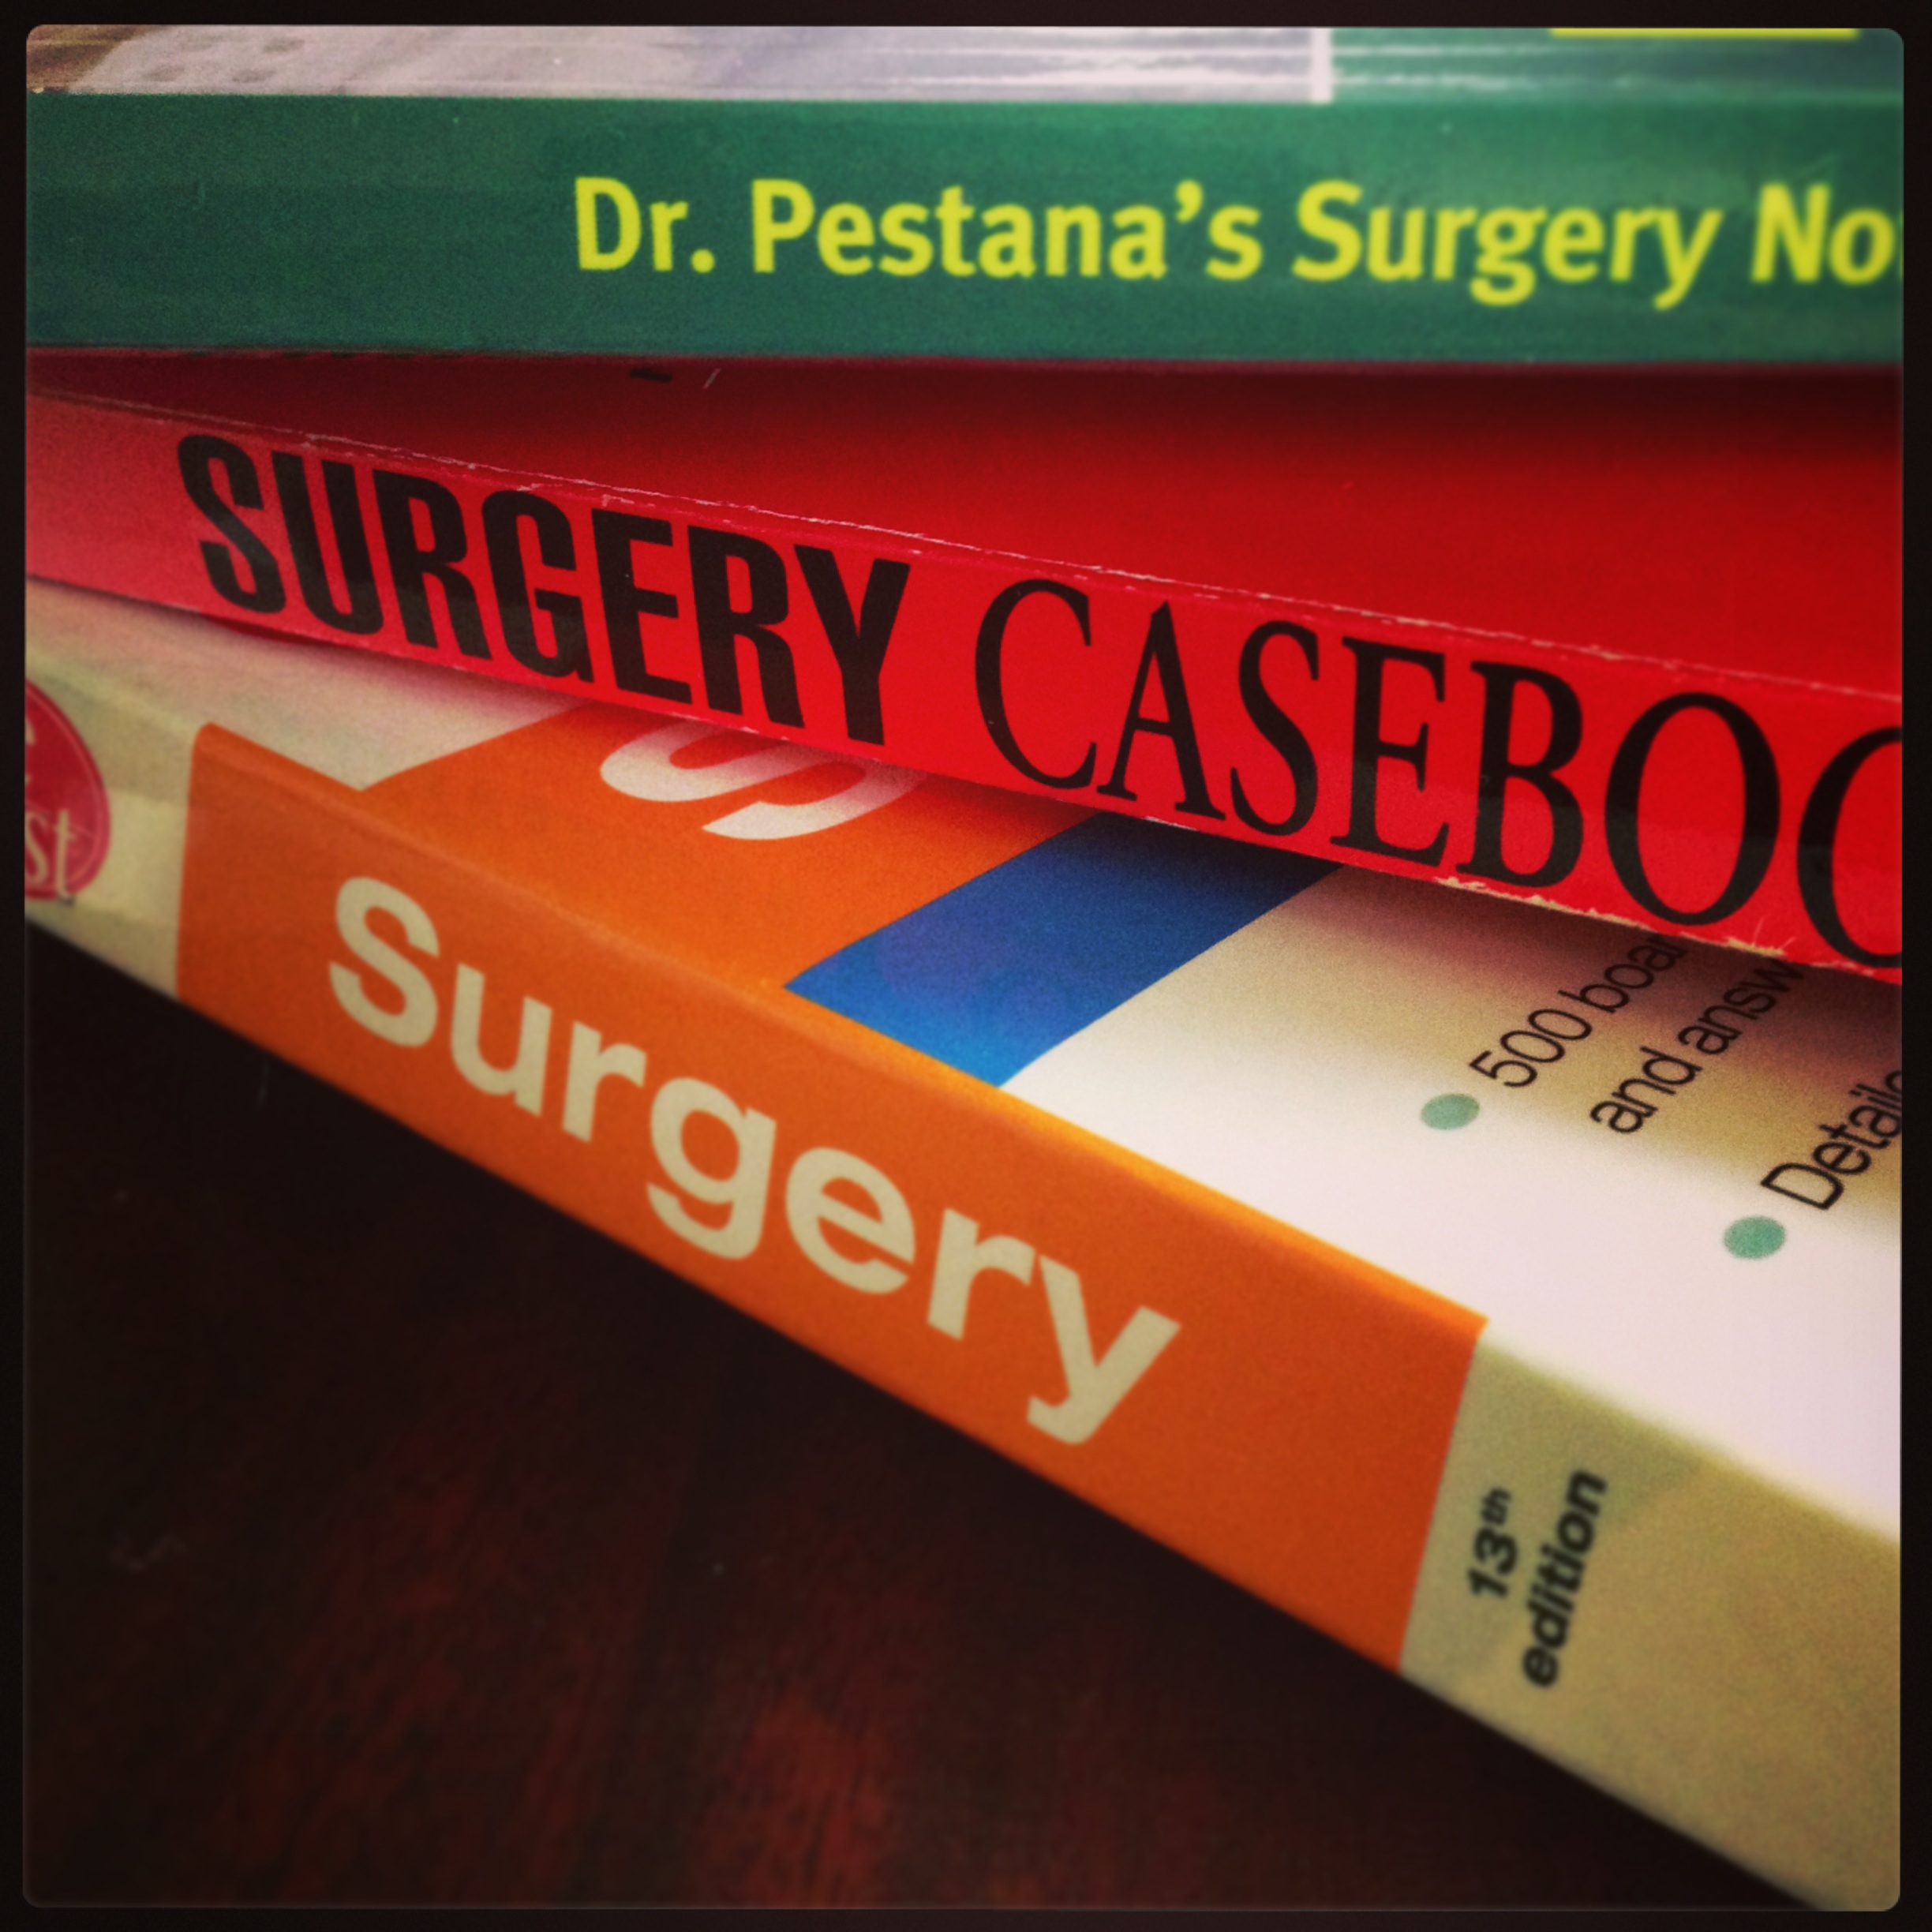 pestana surgery review pdf